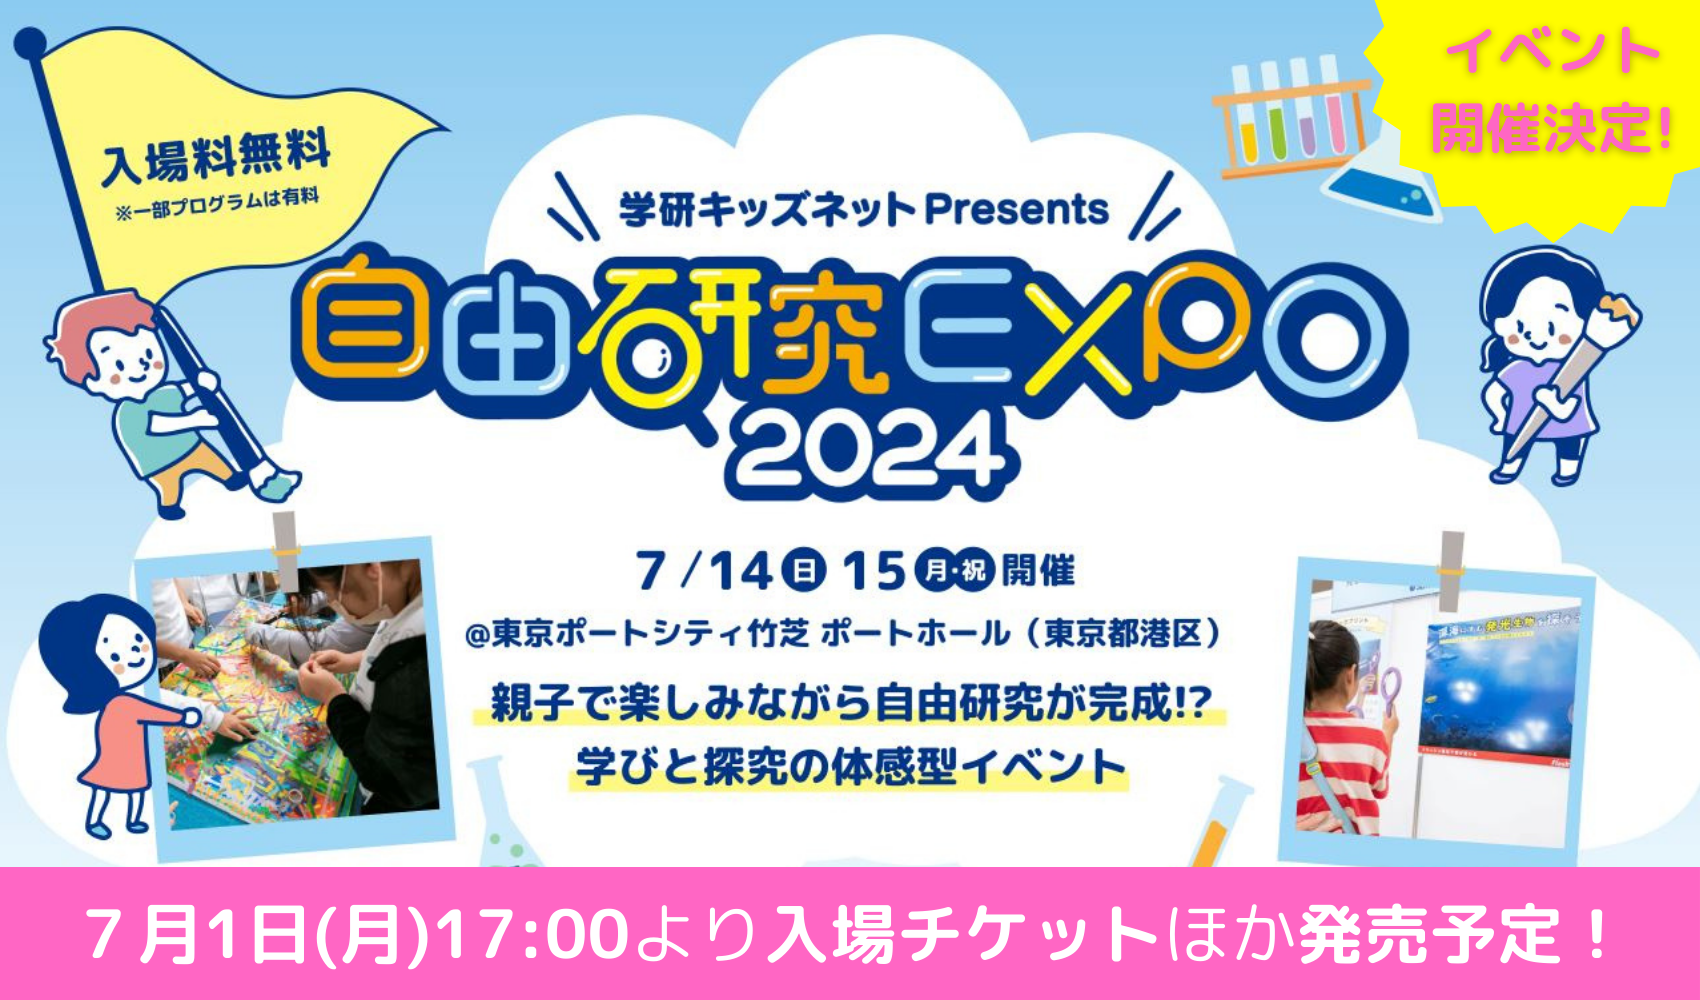 自由研究EXPO2024